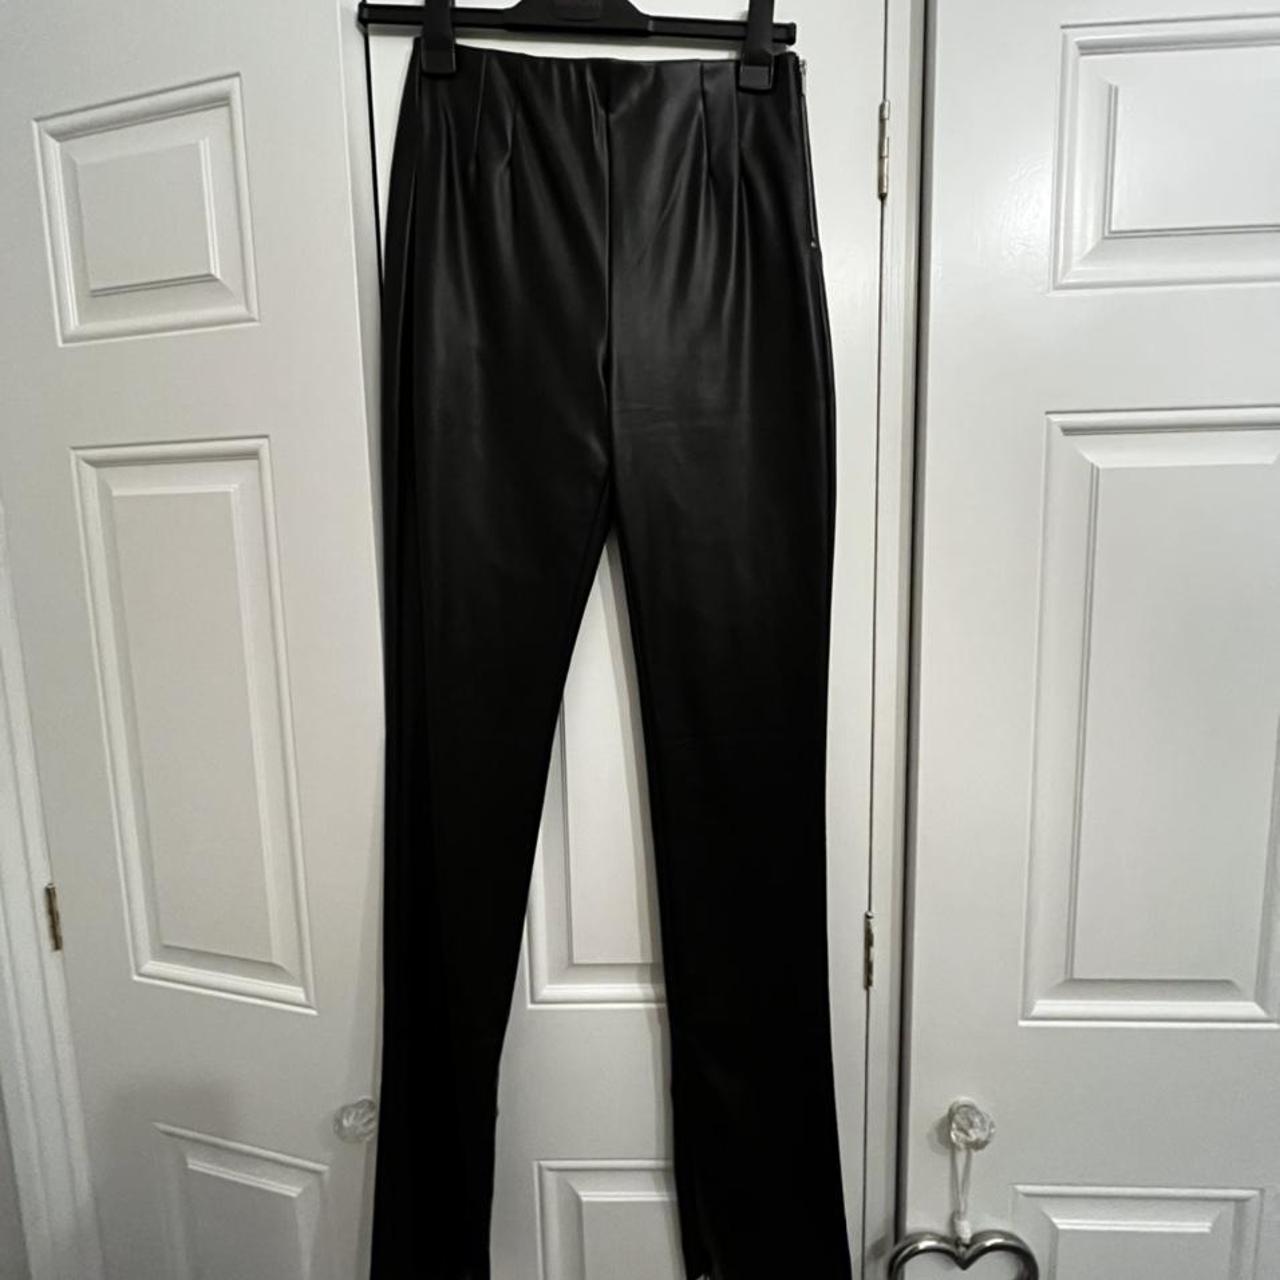 Zara Women's Black Trousers | Depop